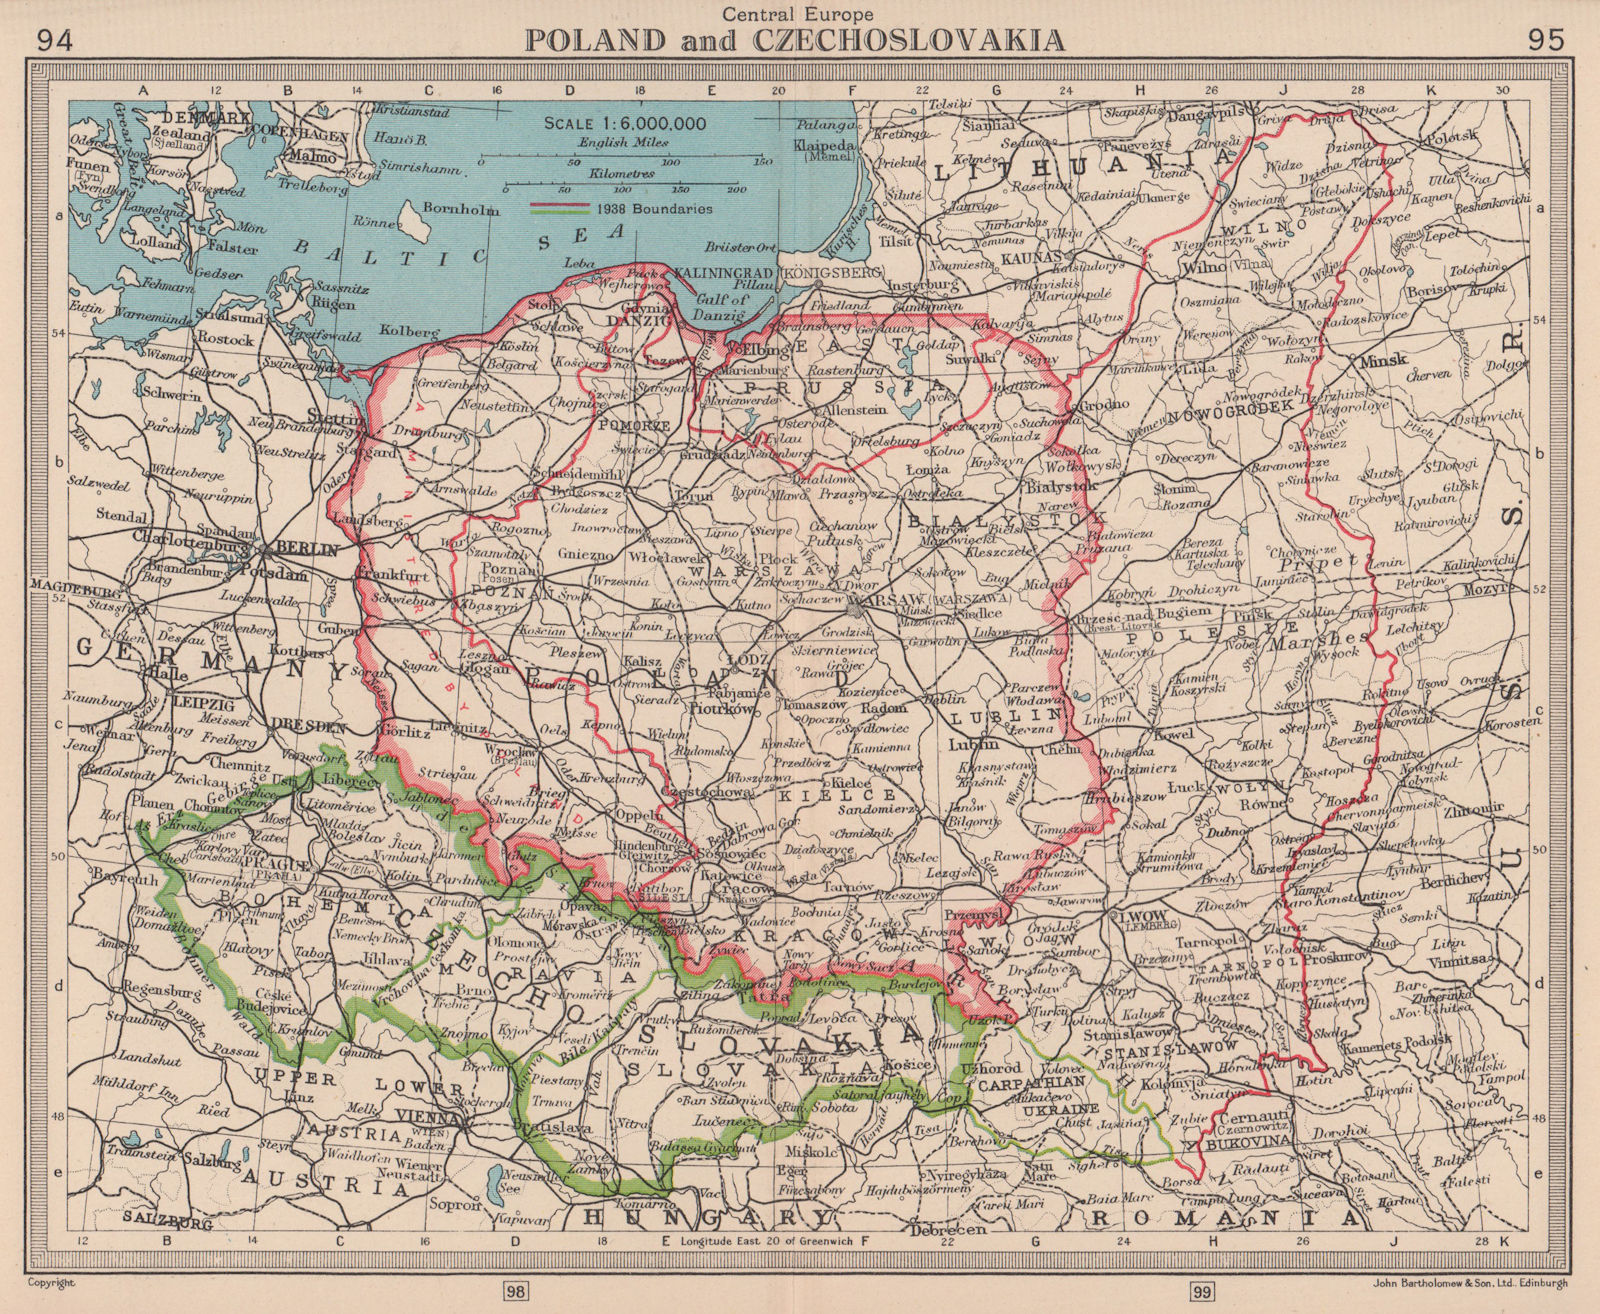 Poland & Czechoslovakia. Showing 1938 & 1945 borders. BARTHOLOMEW 1949 old map